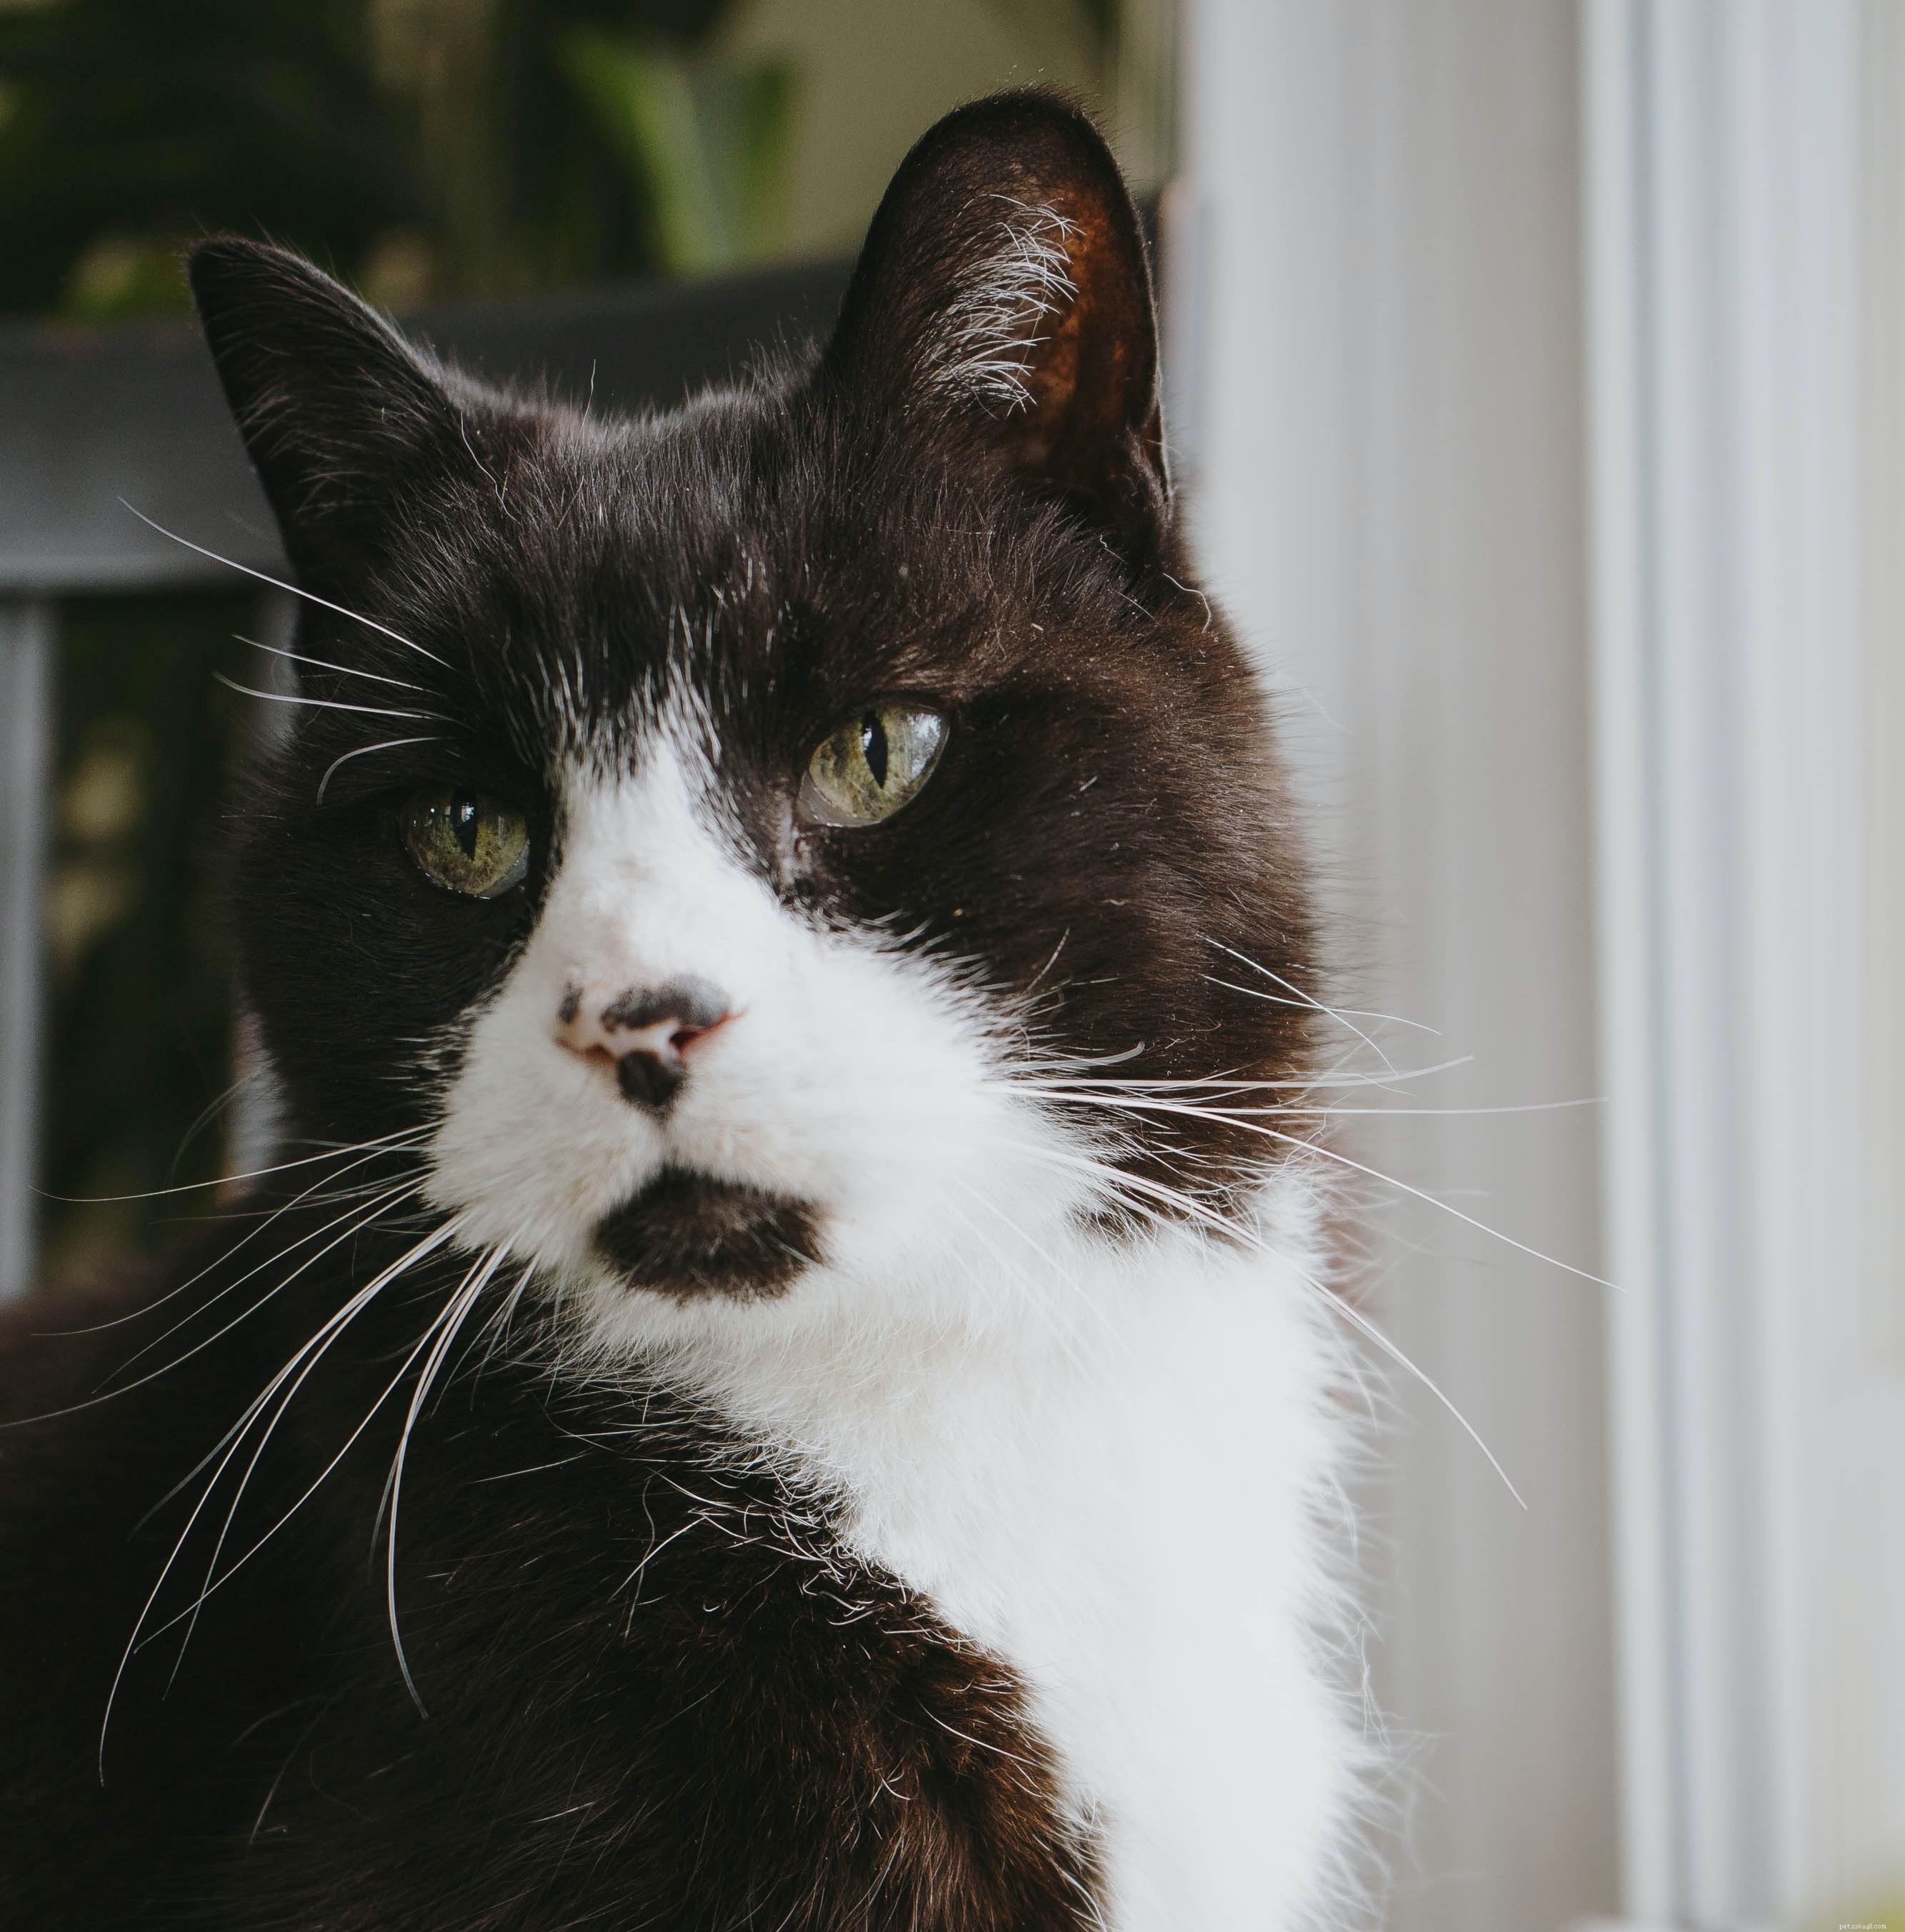 Tack vare bättre vård och veterinärbehandlingar lever våra husdjurskatter längre än någonsin tidigare, men vad är en katts genomsnittliga livslängd?